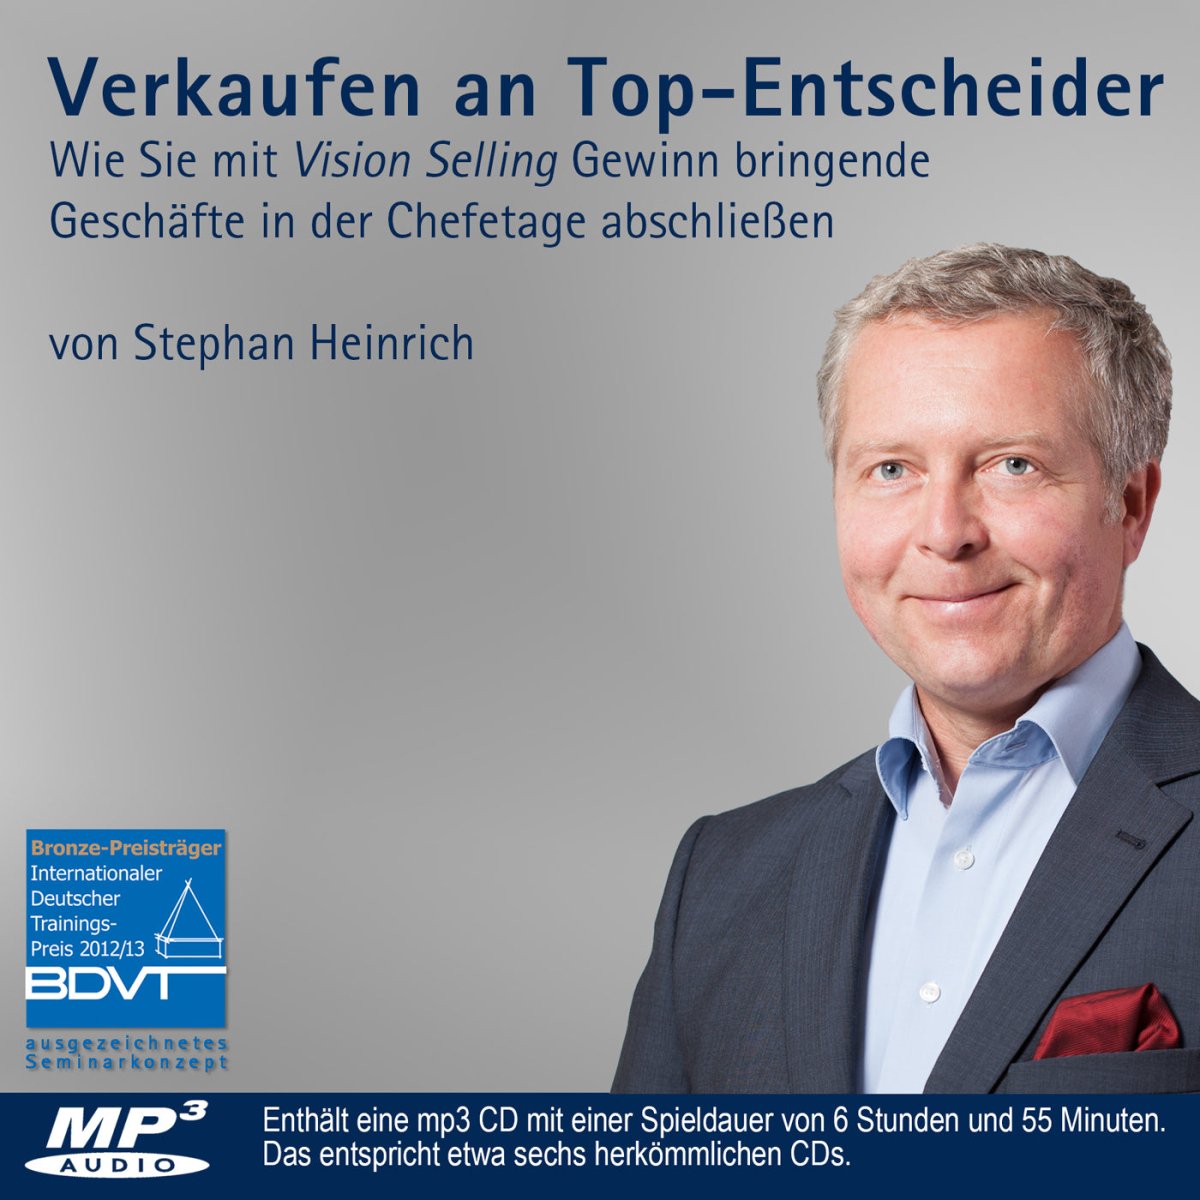 Hörbuch als CD: Verkaufen an Top-Entscheider - Stephan Heinrich